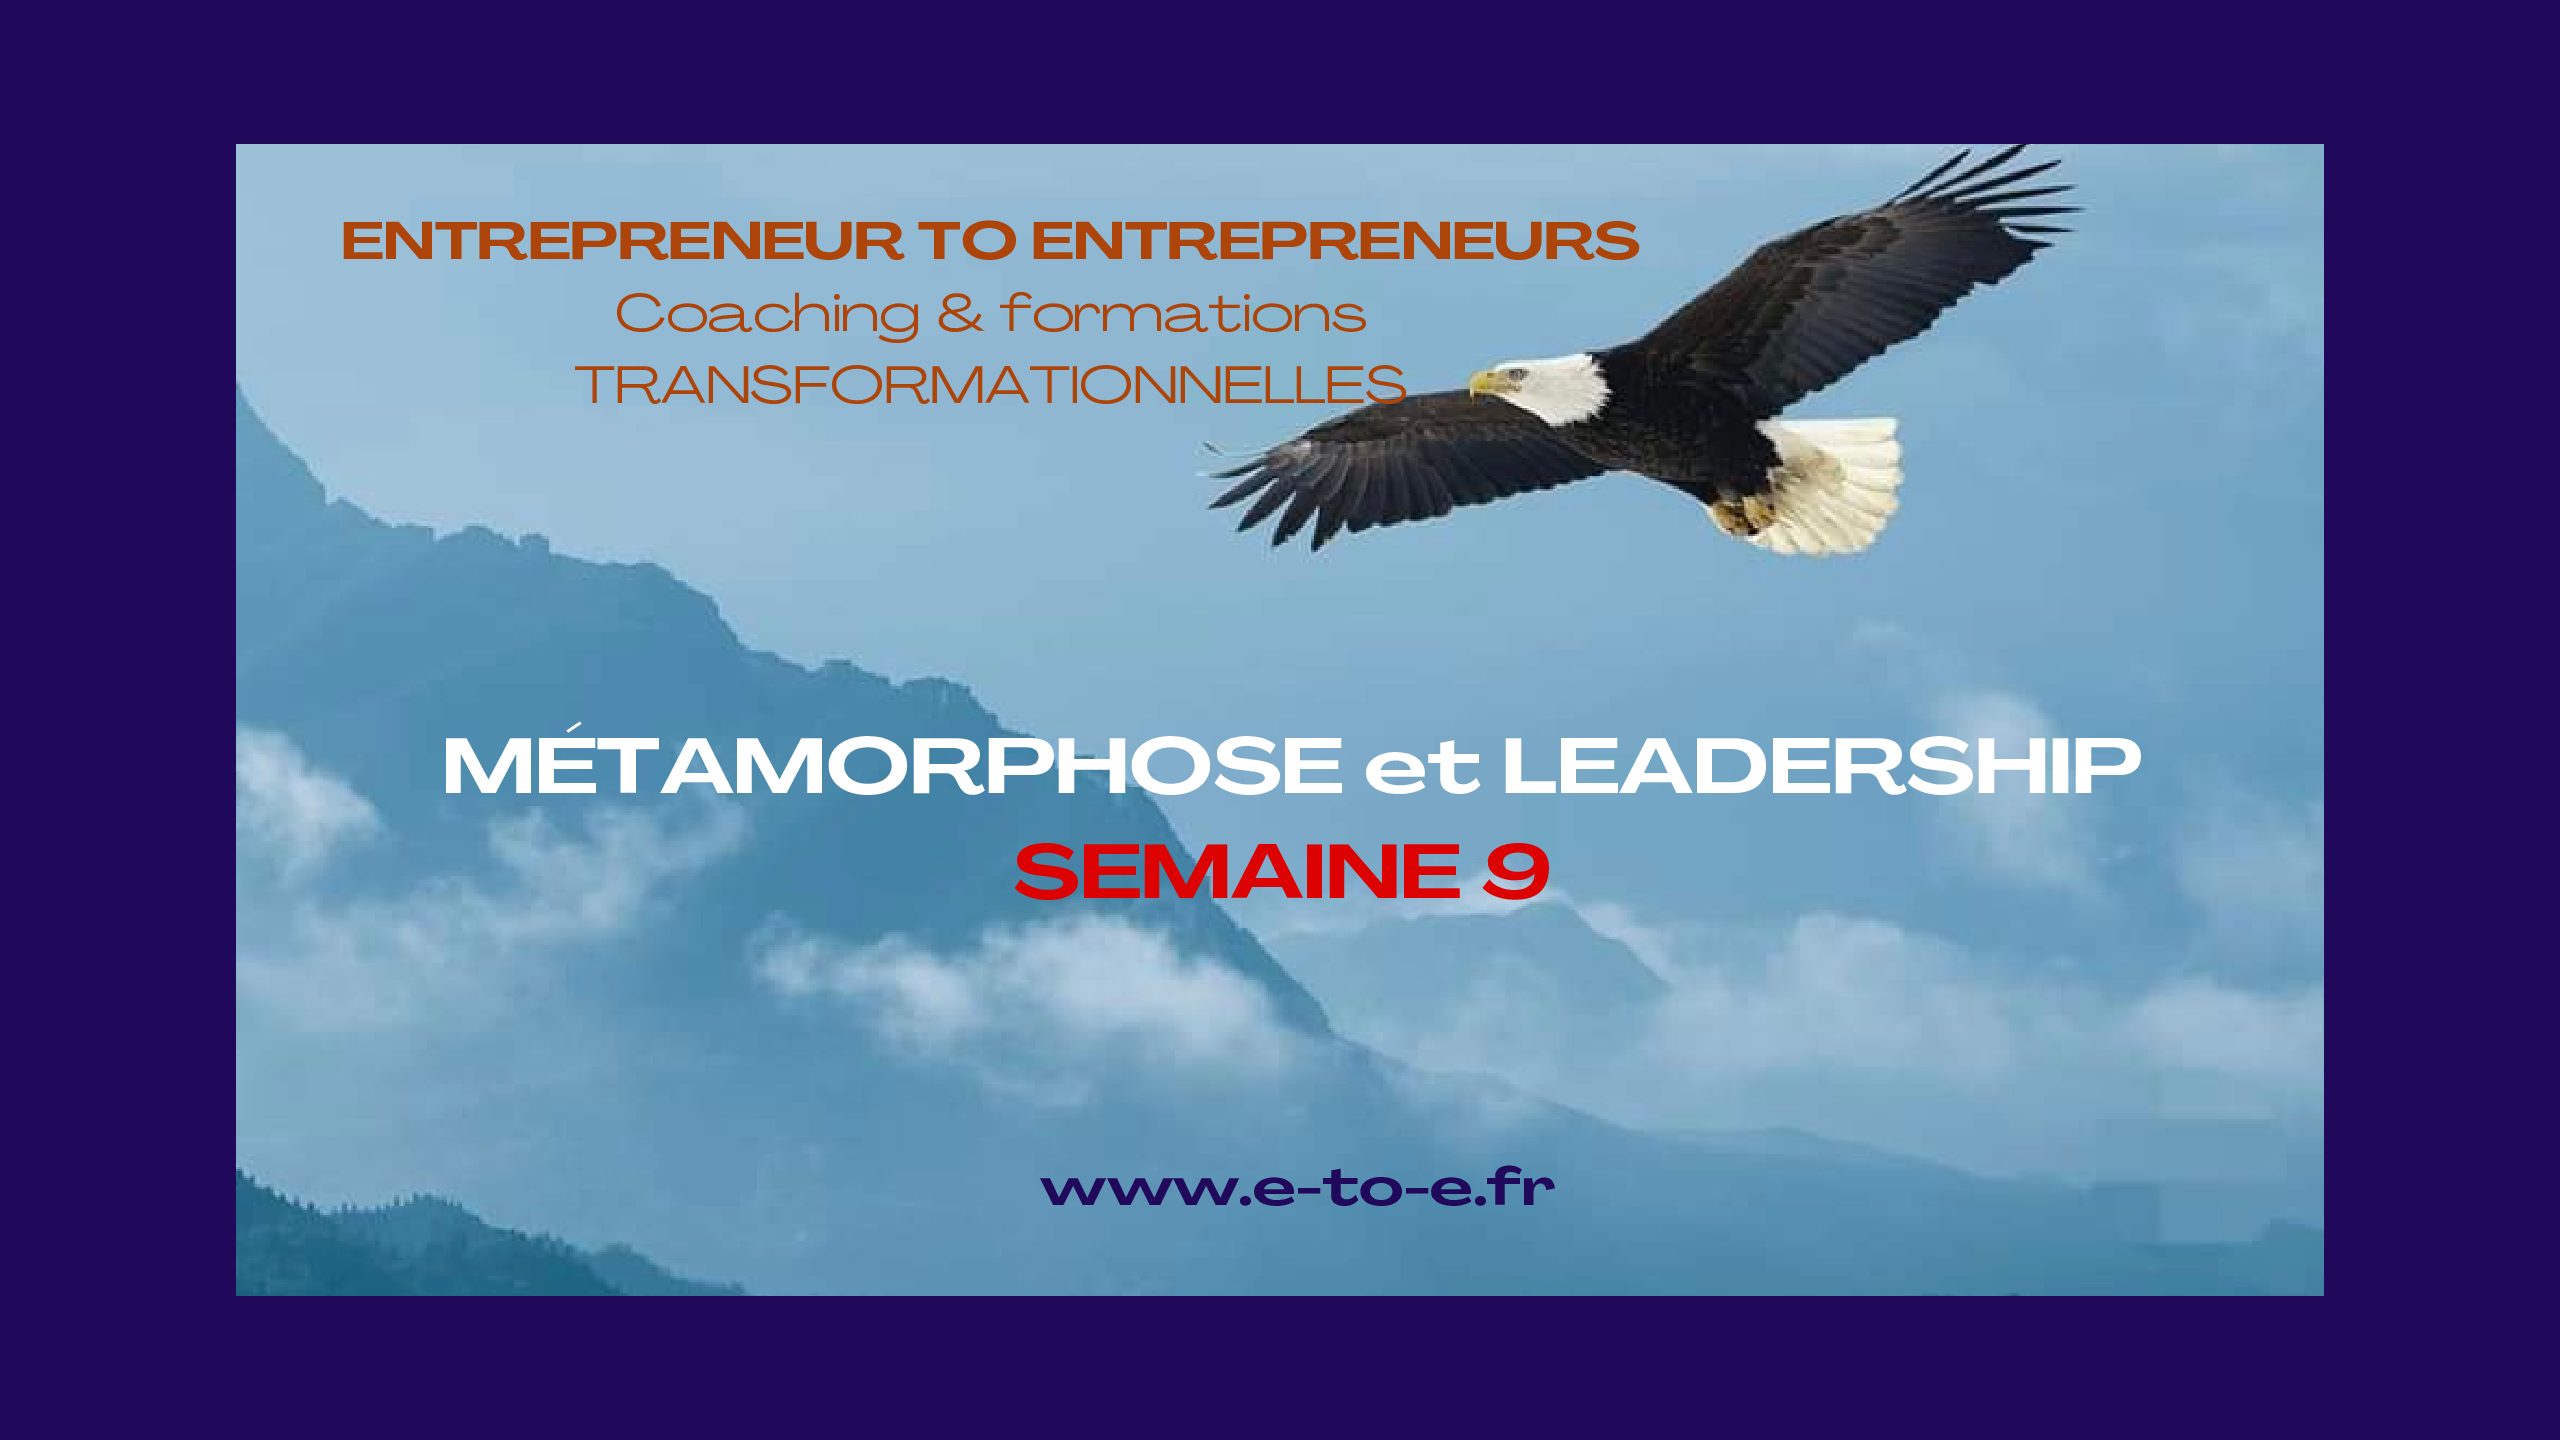 MÉTAMORPHOSE & LEADERSHIP SEMAINE 9